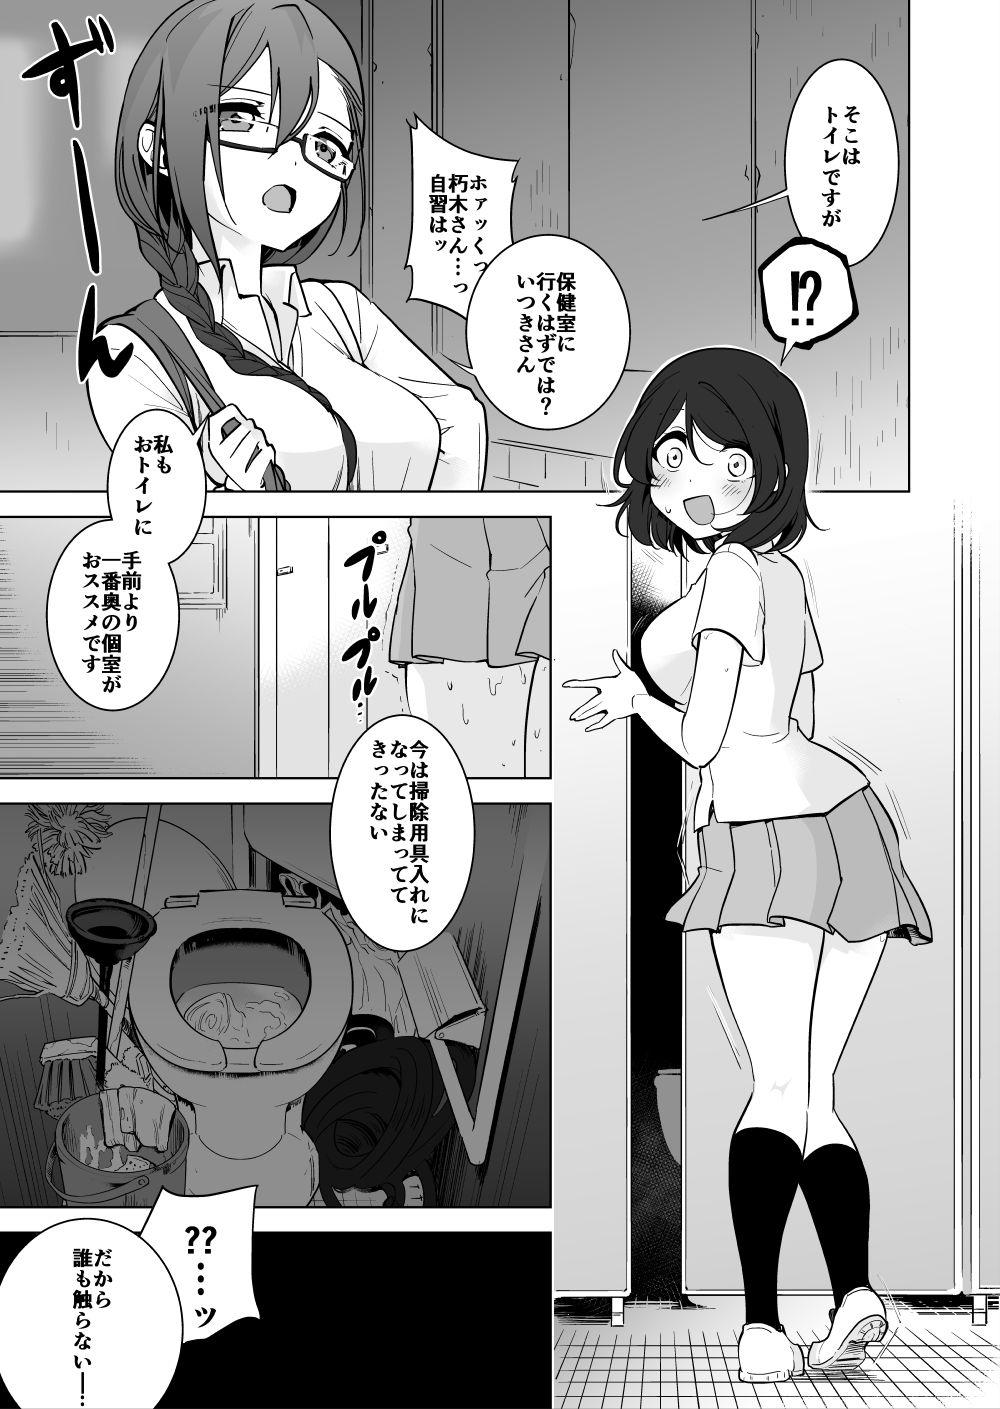 Room Gokimesu no inai gakkō toire-hen - Original Masturbation - Page 1